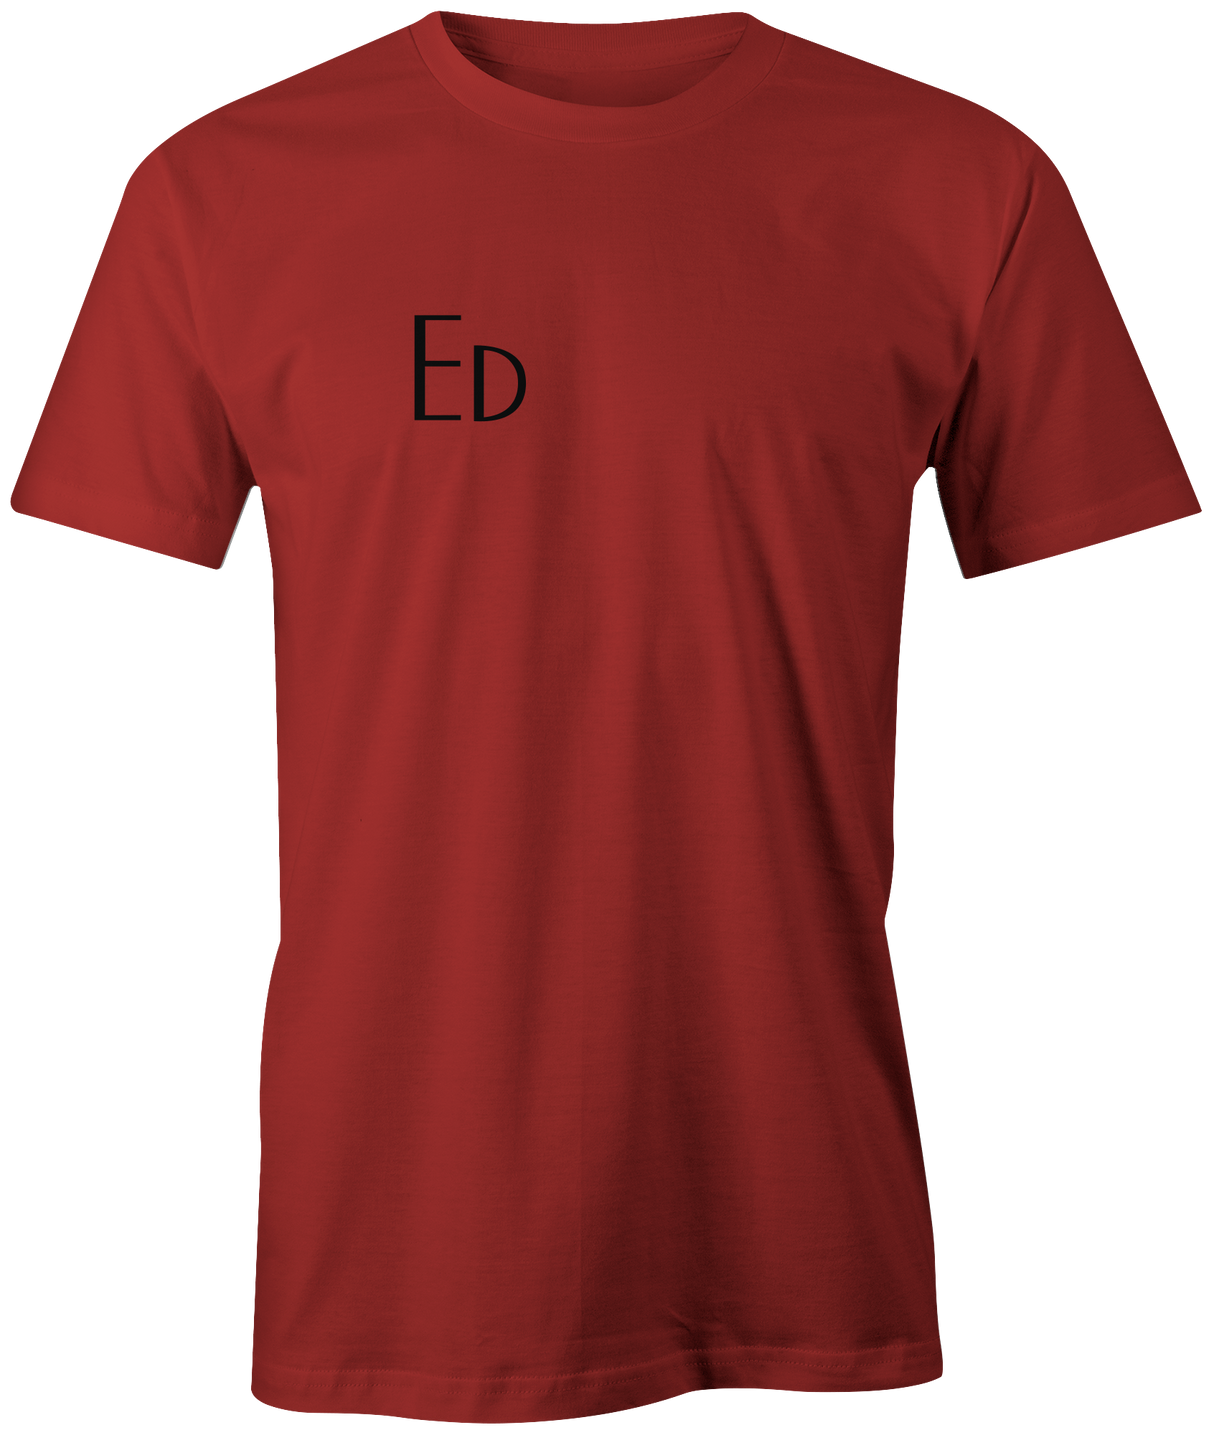 Vintage "Ed" Stuckey Bowl Bowling T-shirt